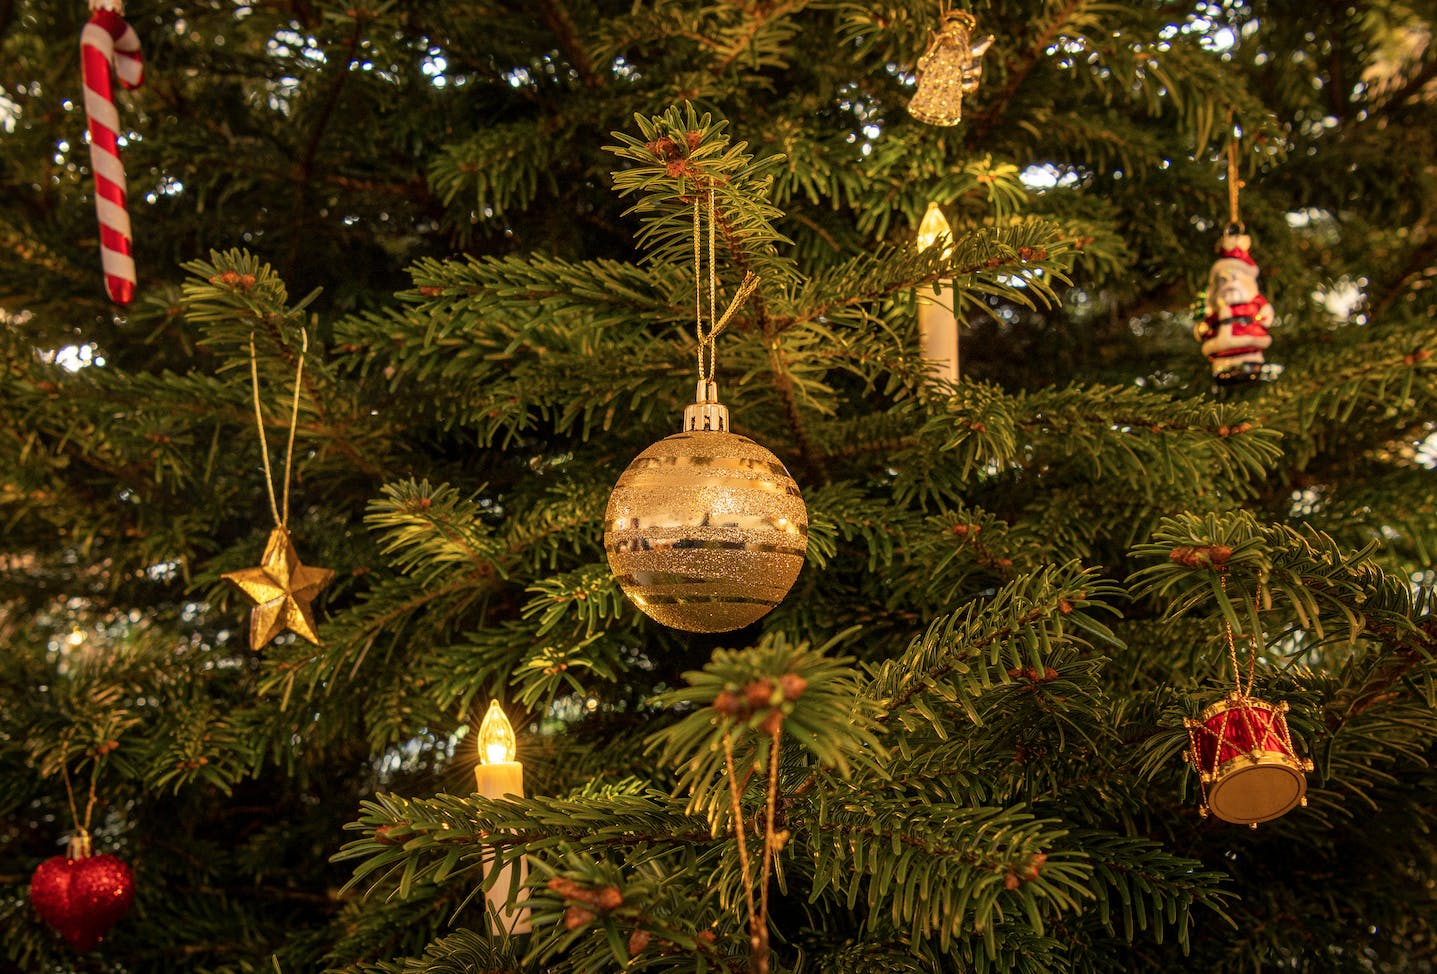 En amerikansk familie gjorde et noget besynderligt fund i deres juletræ. Eller det vil sige: Deres rengøringshjælp gjorde det besynderlige fund.